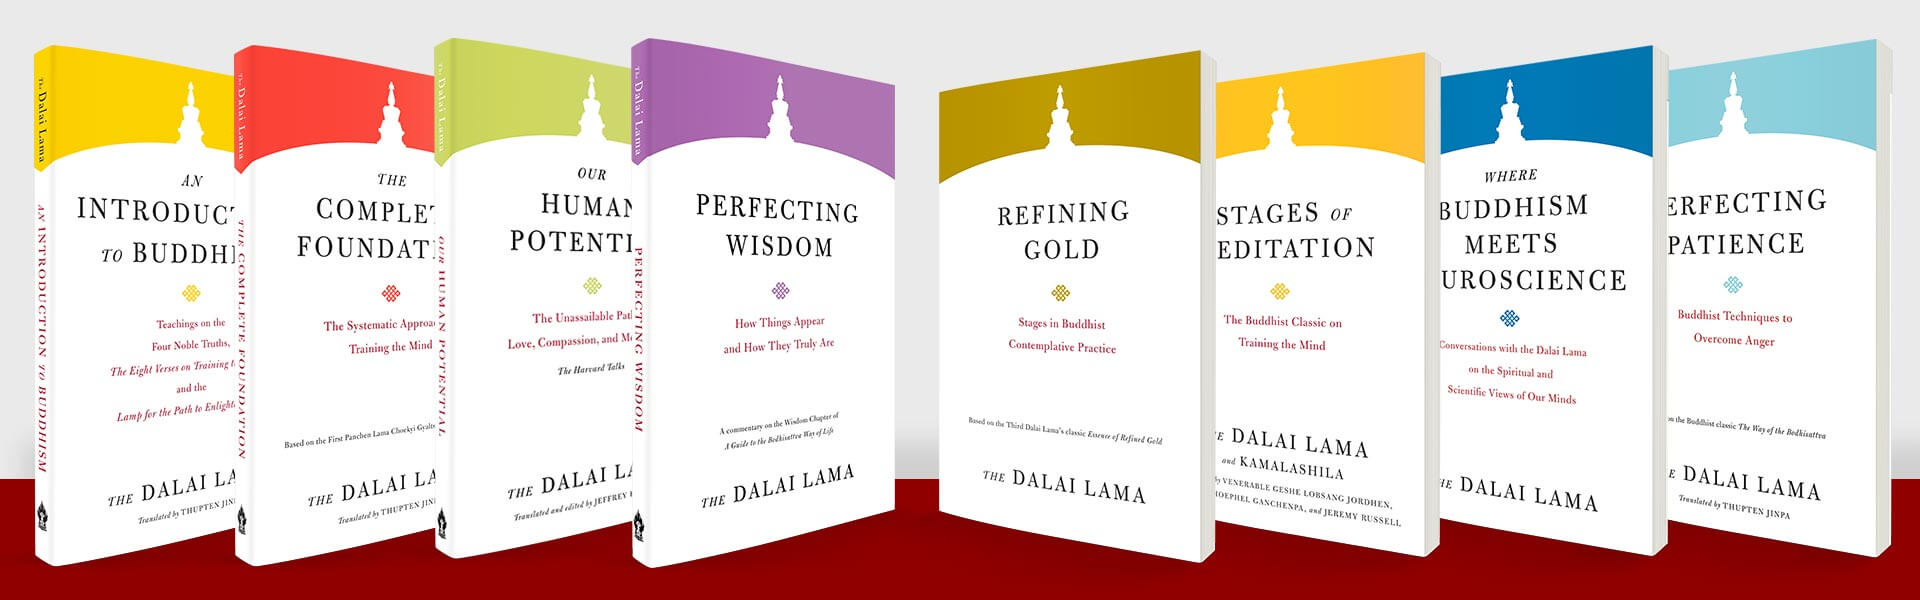 Core Teachings of the Dalai Lama